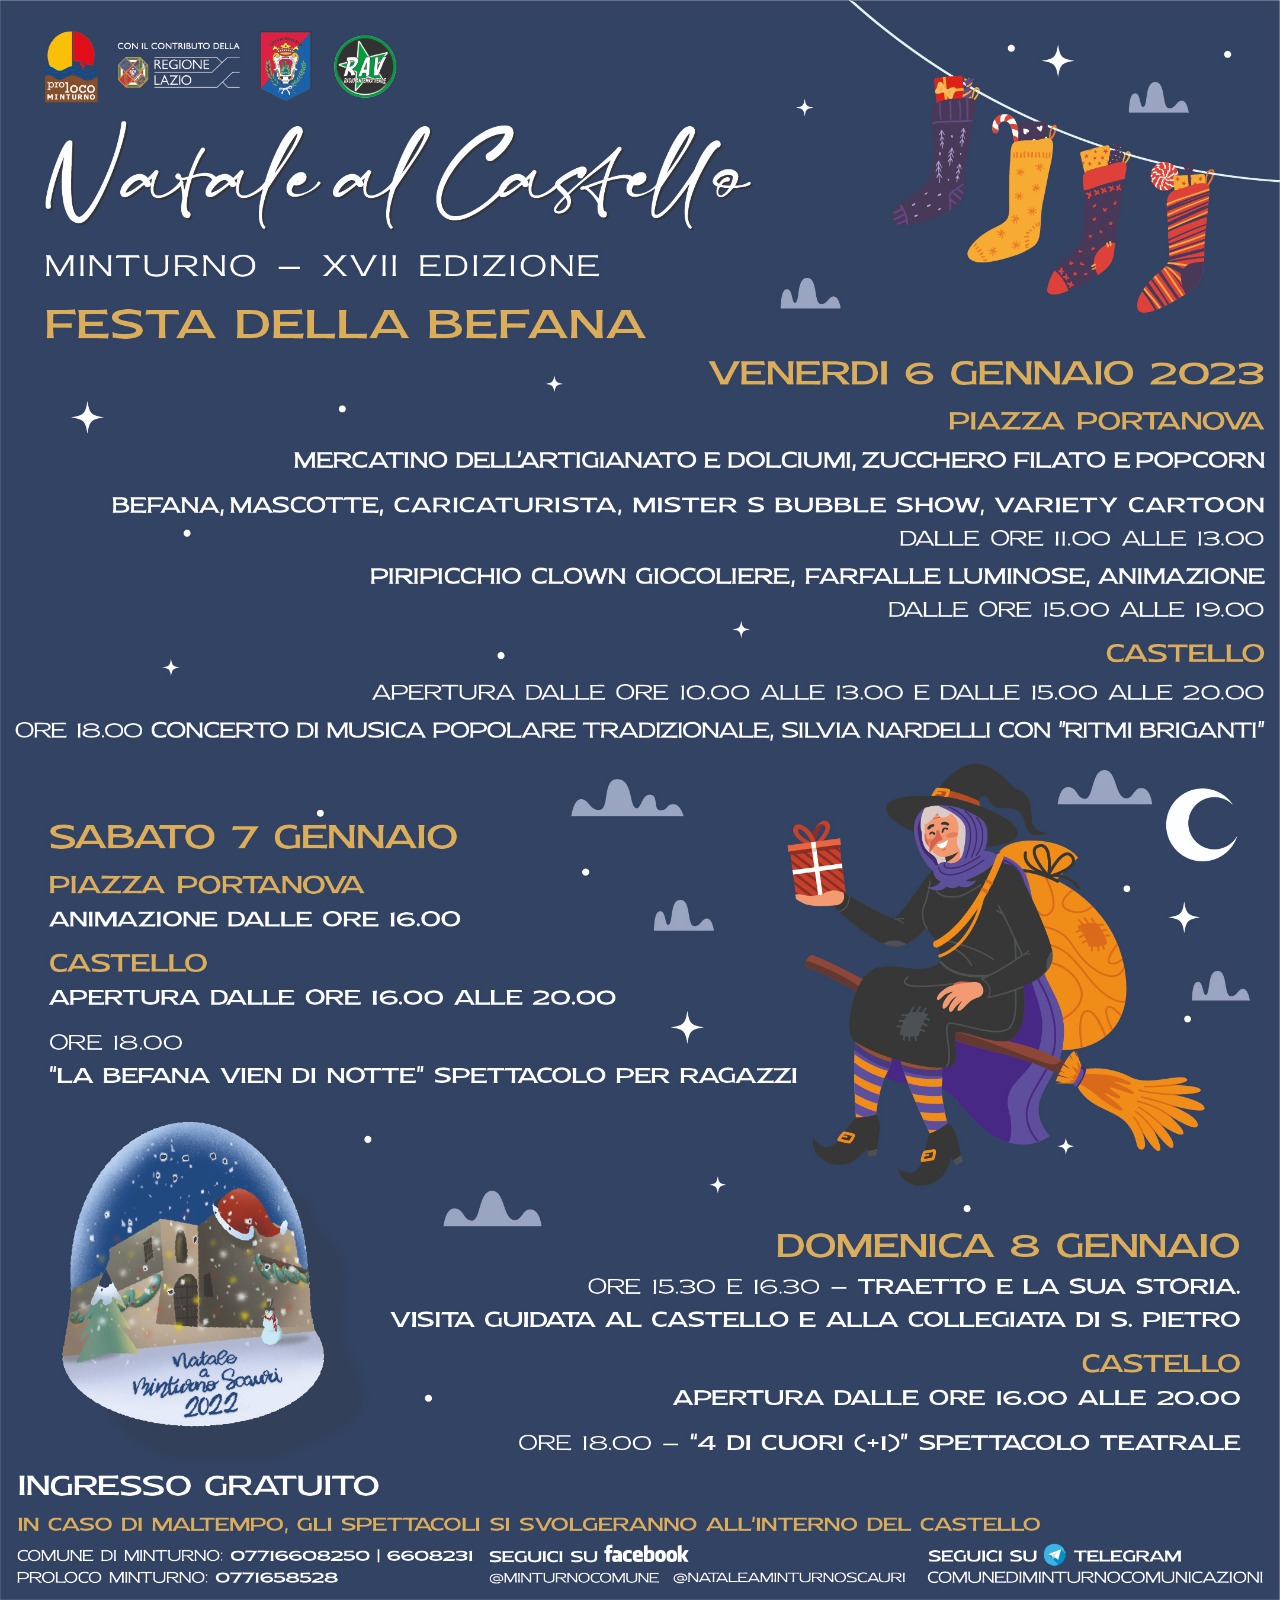 Natale al Castello - XVII edizione
Dal 6 all’8 gennaio la Festa della Befana a Minturno
COMUNICATO STAMPA
03.01.2023